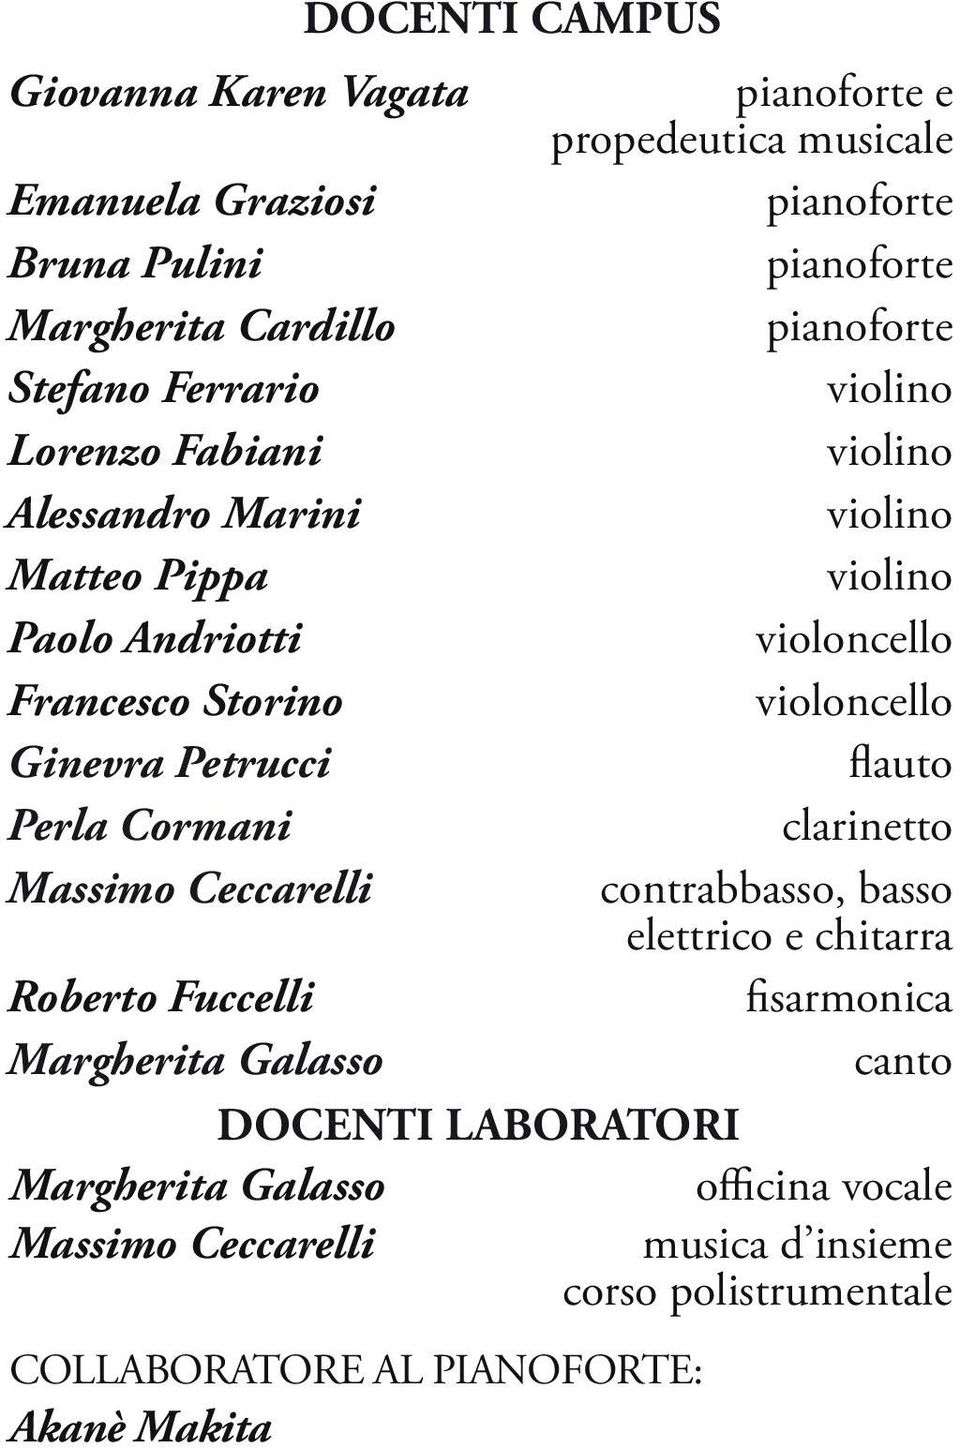 Ginevra Petrucci flauto Perla Cormani clarinetto Massimo Ceccarelli contrabbasso, basso elettrico e chitarra Roberto Fuccelli fisarmonica Margherita Galasso